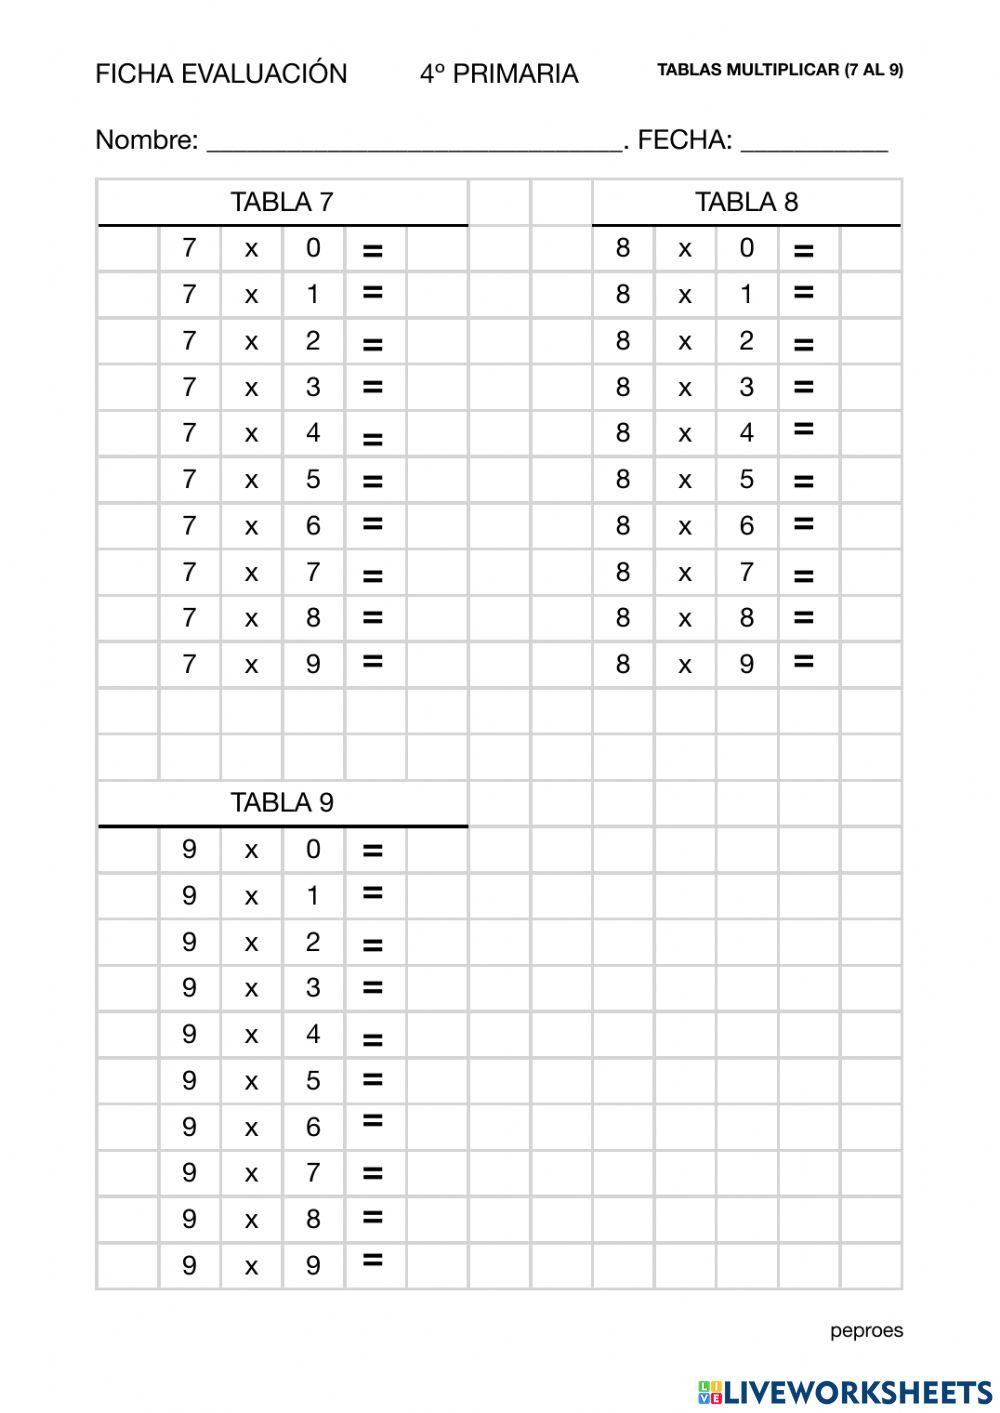 Ficha evaluación tablas multiplicar (7 al 9)